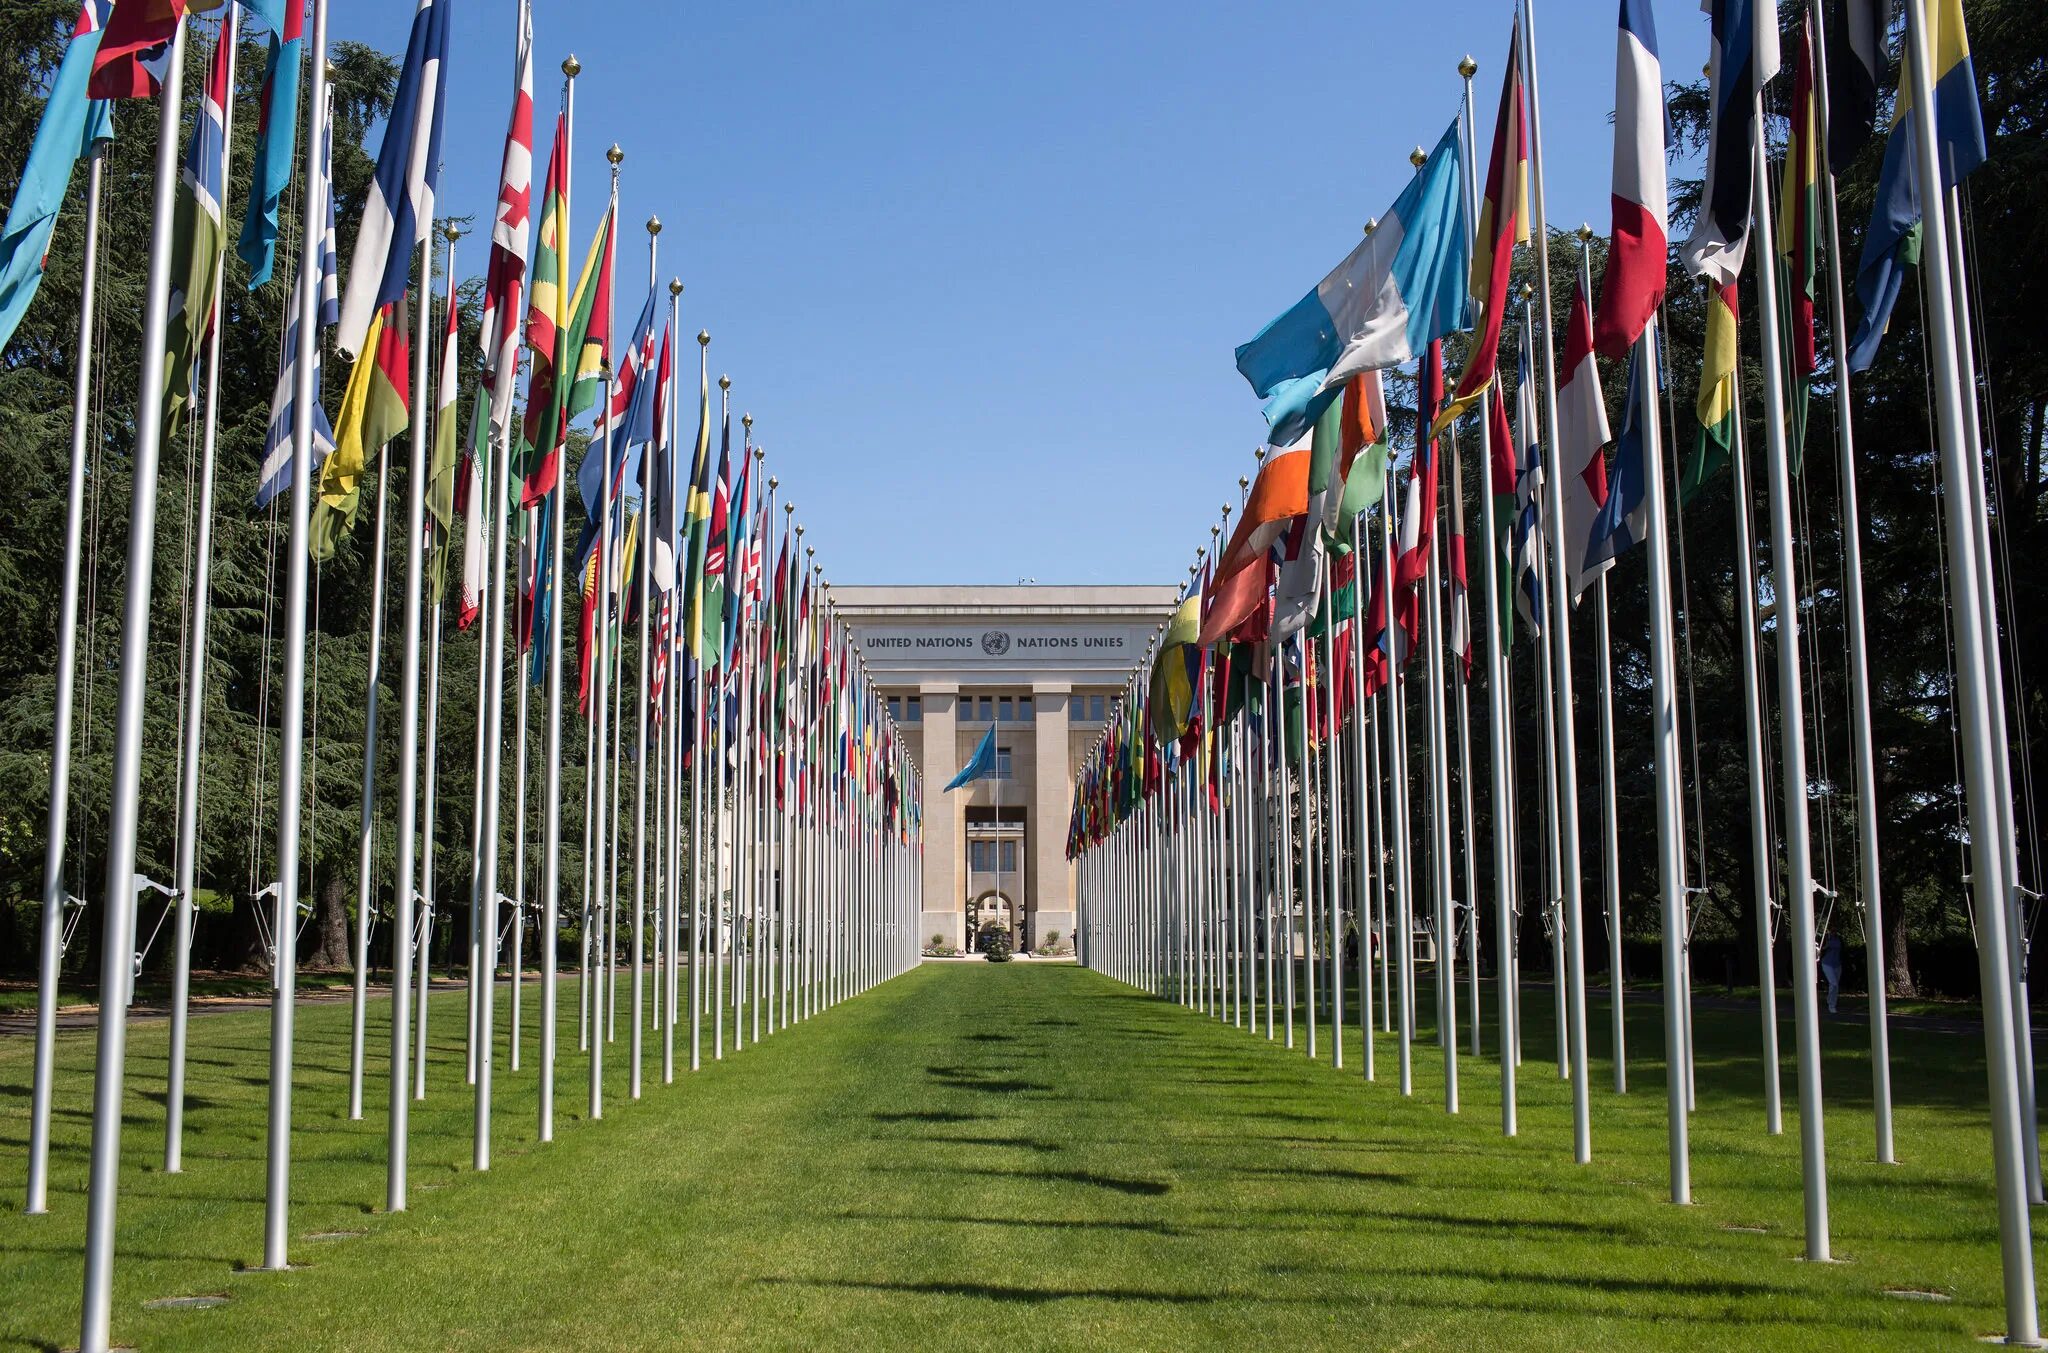 Швейцарская штаб квартира оон. Дворец наций в Женеве. ООН ЮНЕСКО. Здание ООН В Женеве. Штаб квартира ЮНЕСКО В Париже.